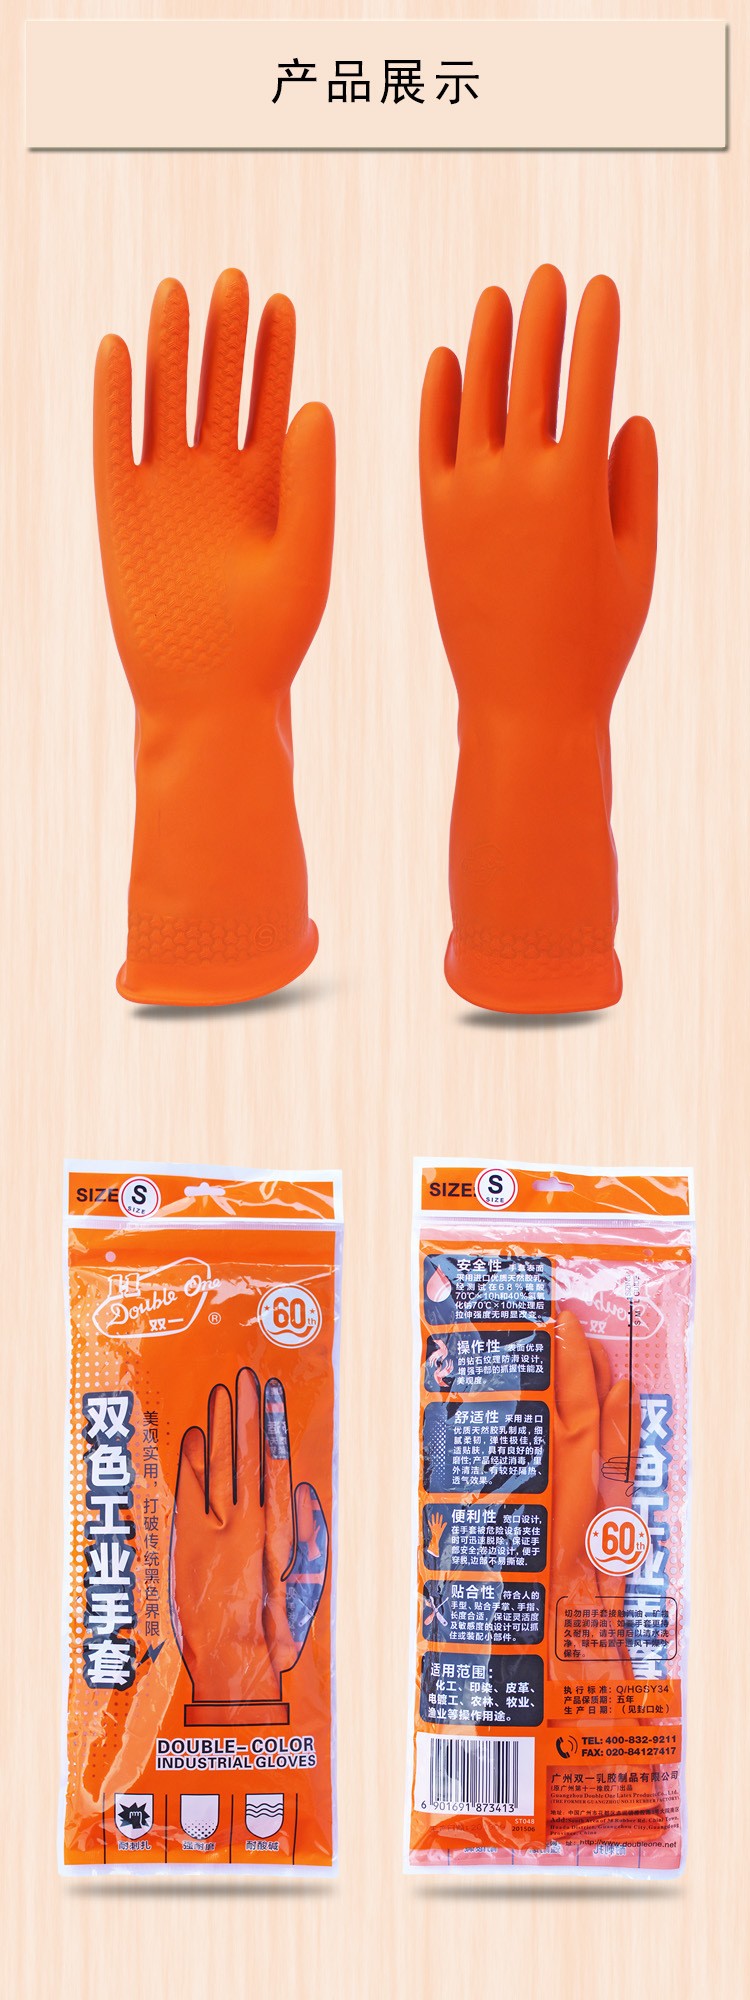 广州双一双色加厚工业乳胶手套耐酸碱手套橘色图片4